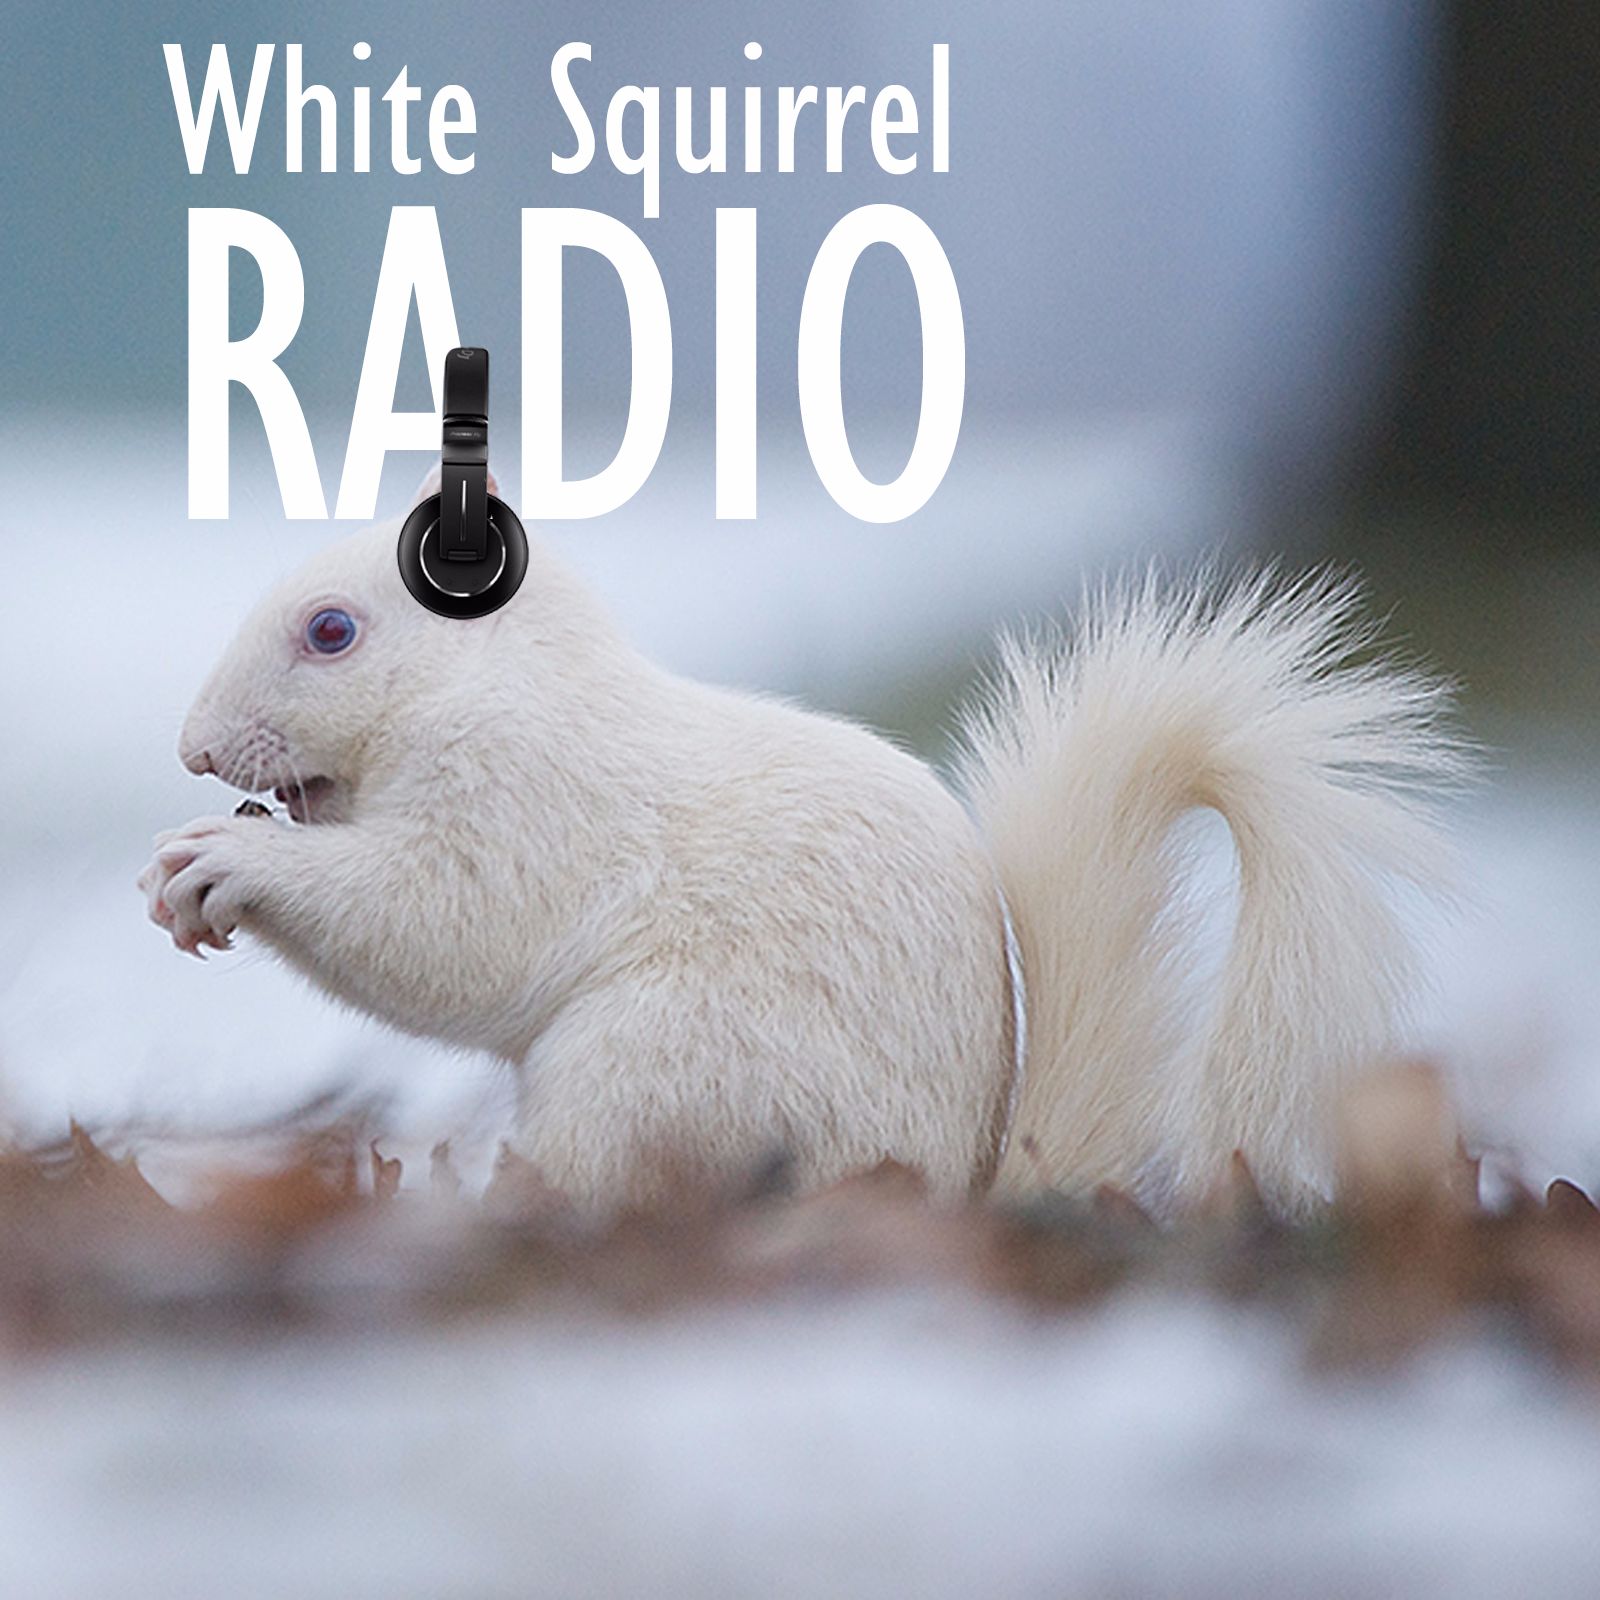 White Squirrel Radio Listen via Stitcher for Podcasts